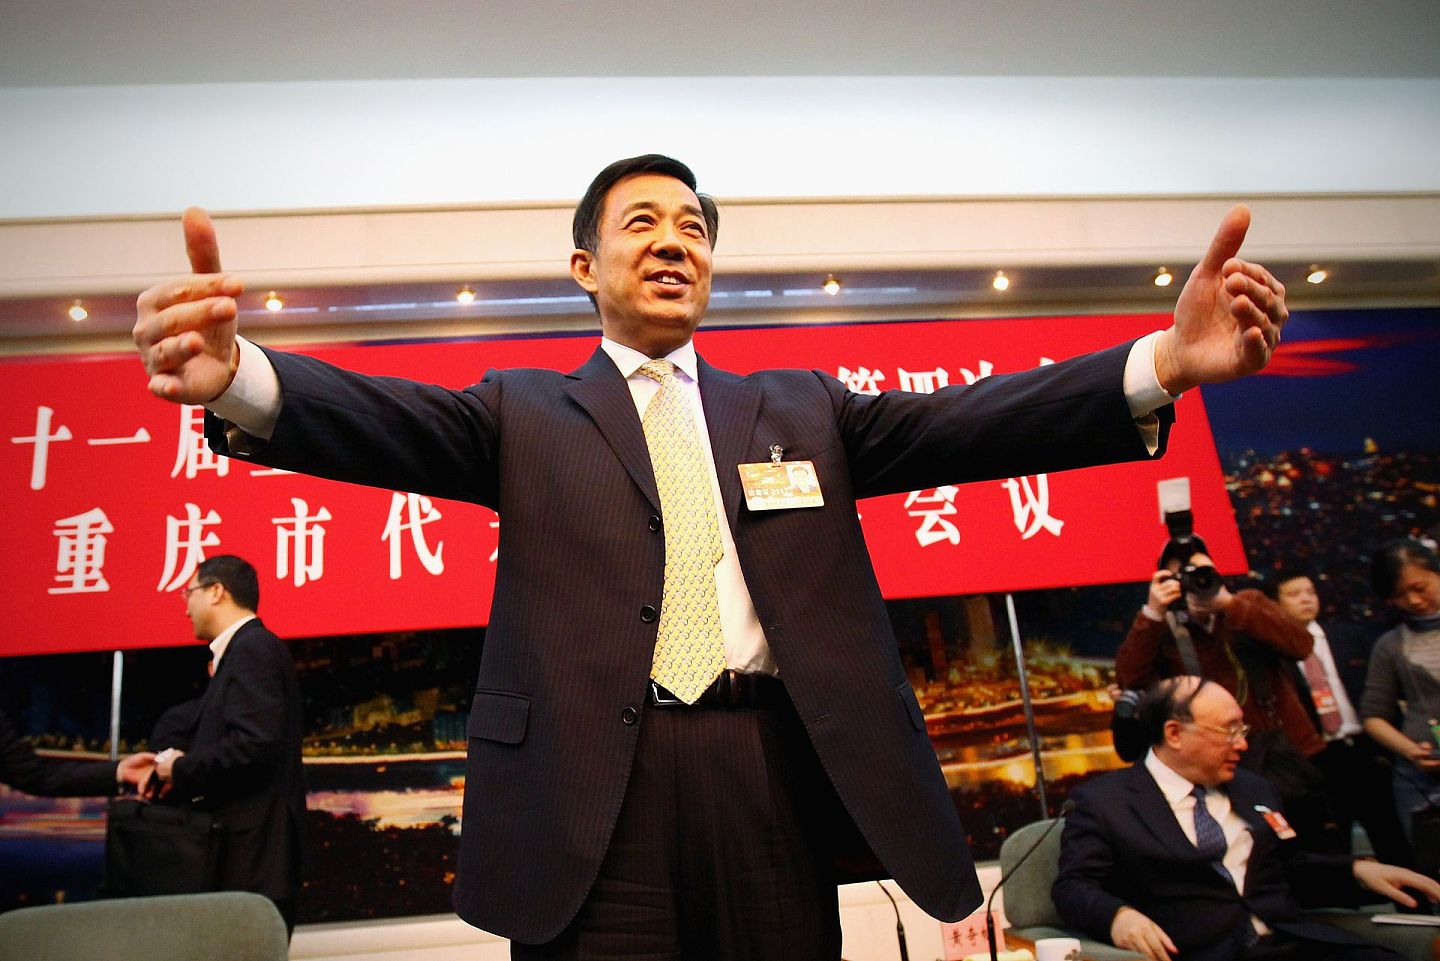 重庆原市委书记薄熙来在重庆推行一系列政策，曾被称为“重庆模式”。(VCG)